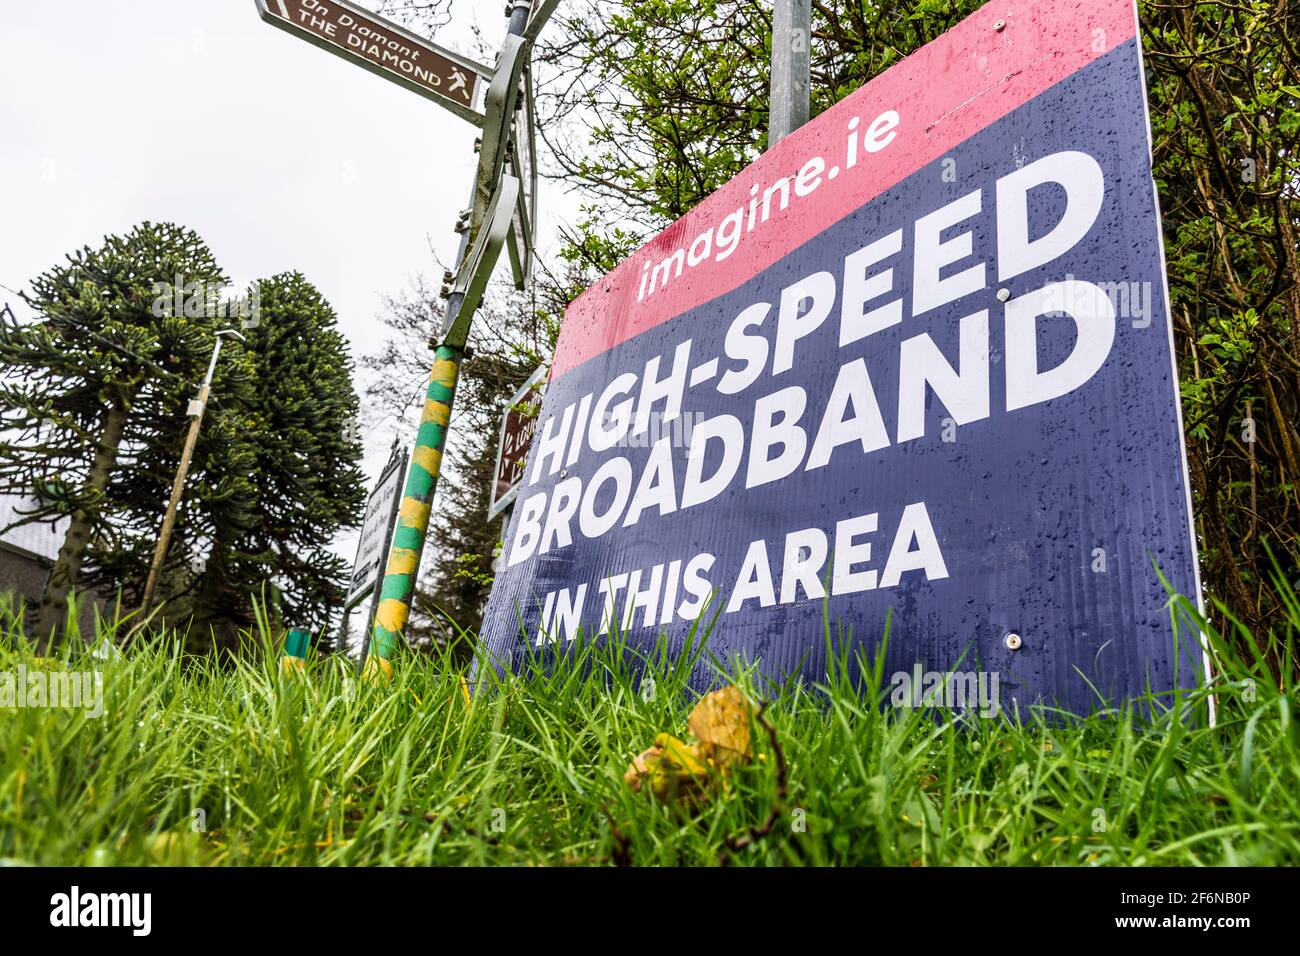 Segnaletica per Imagine.ie, banda larga ad alta velocità in quest'area. Connettività rurale in Irlanda. Foto Stock